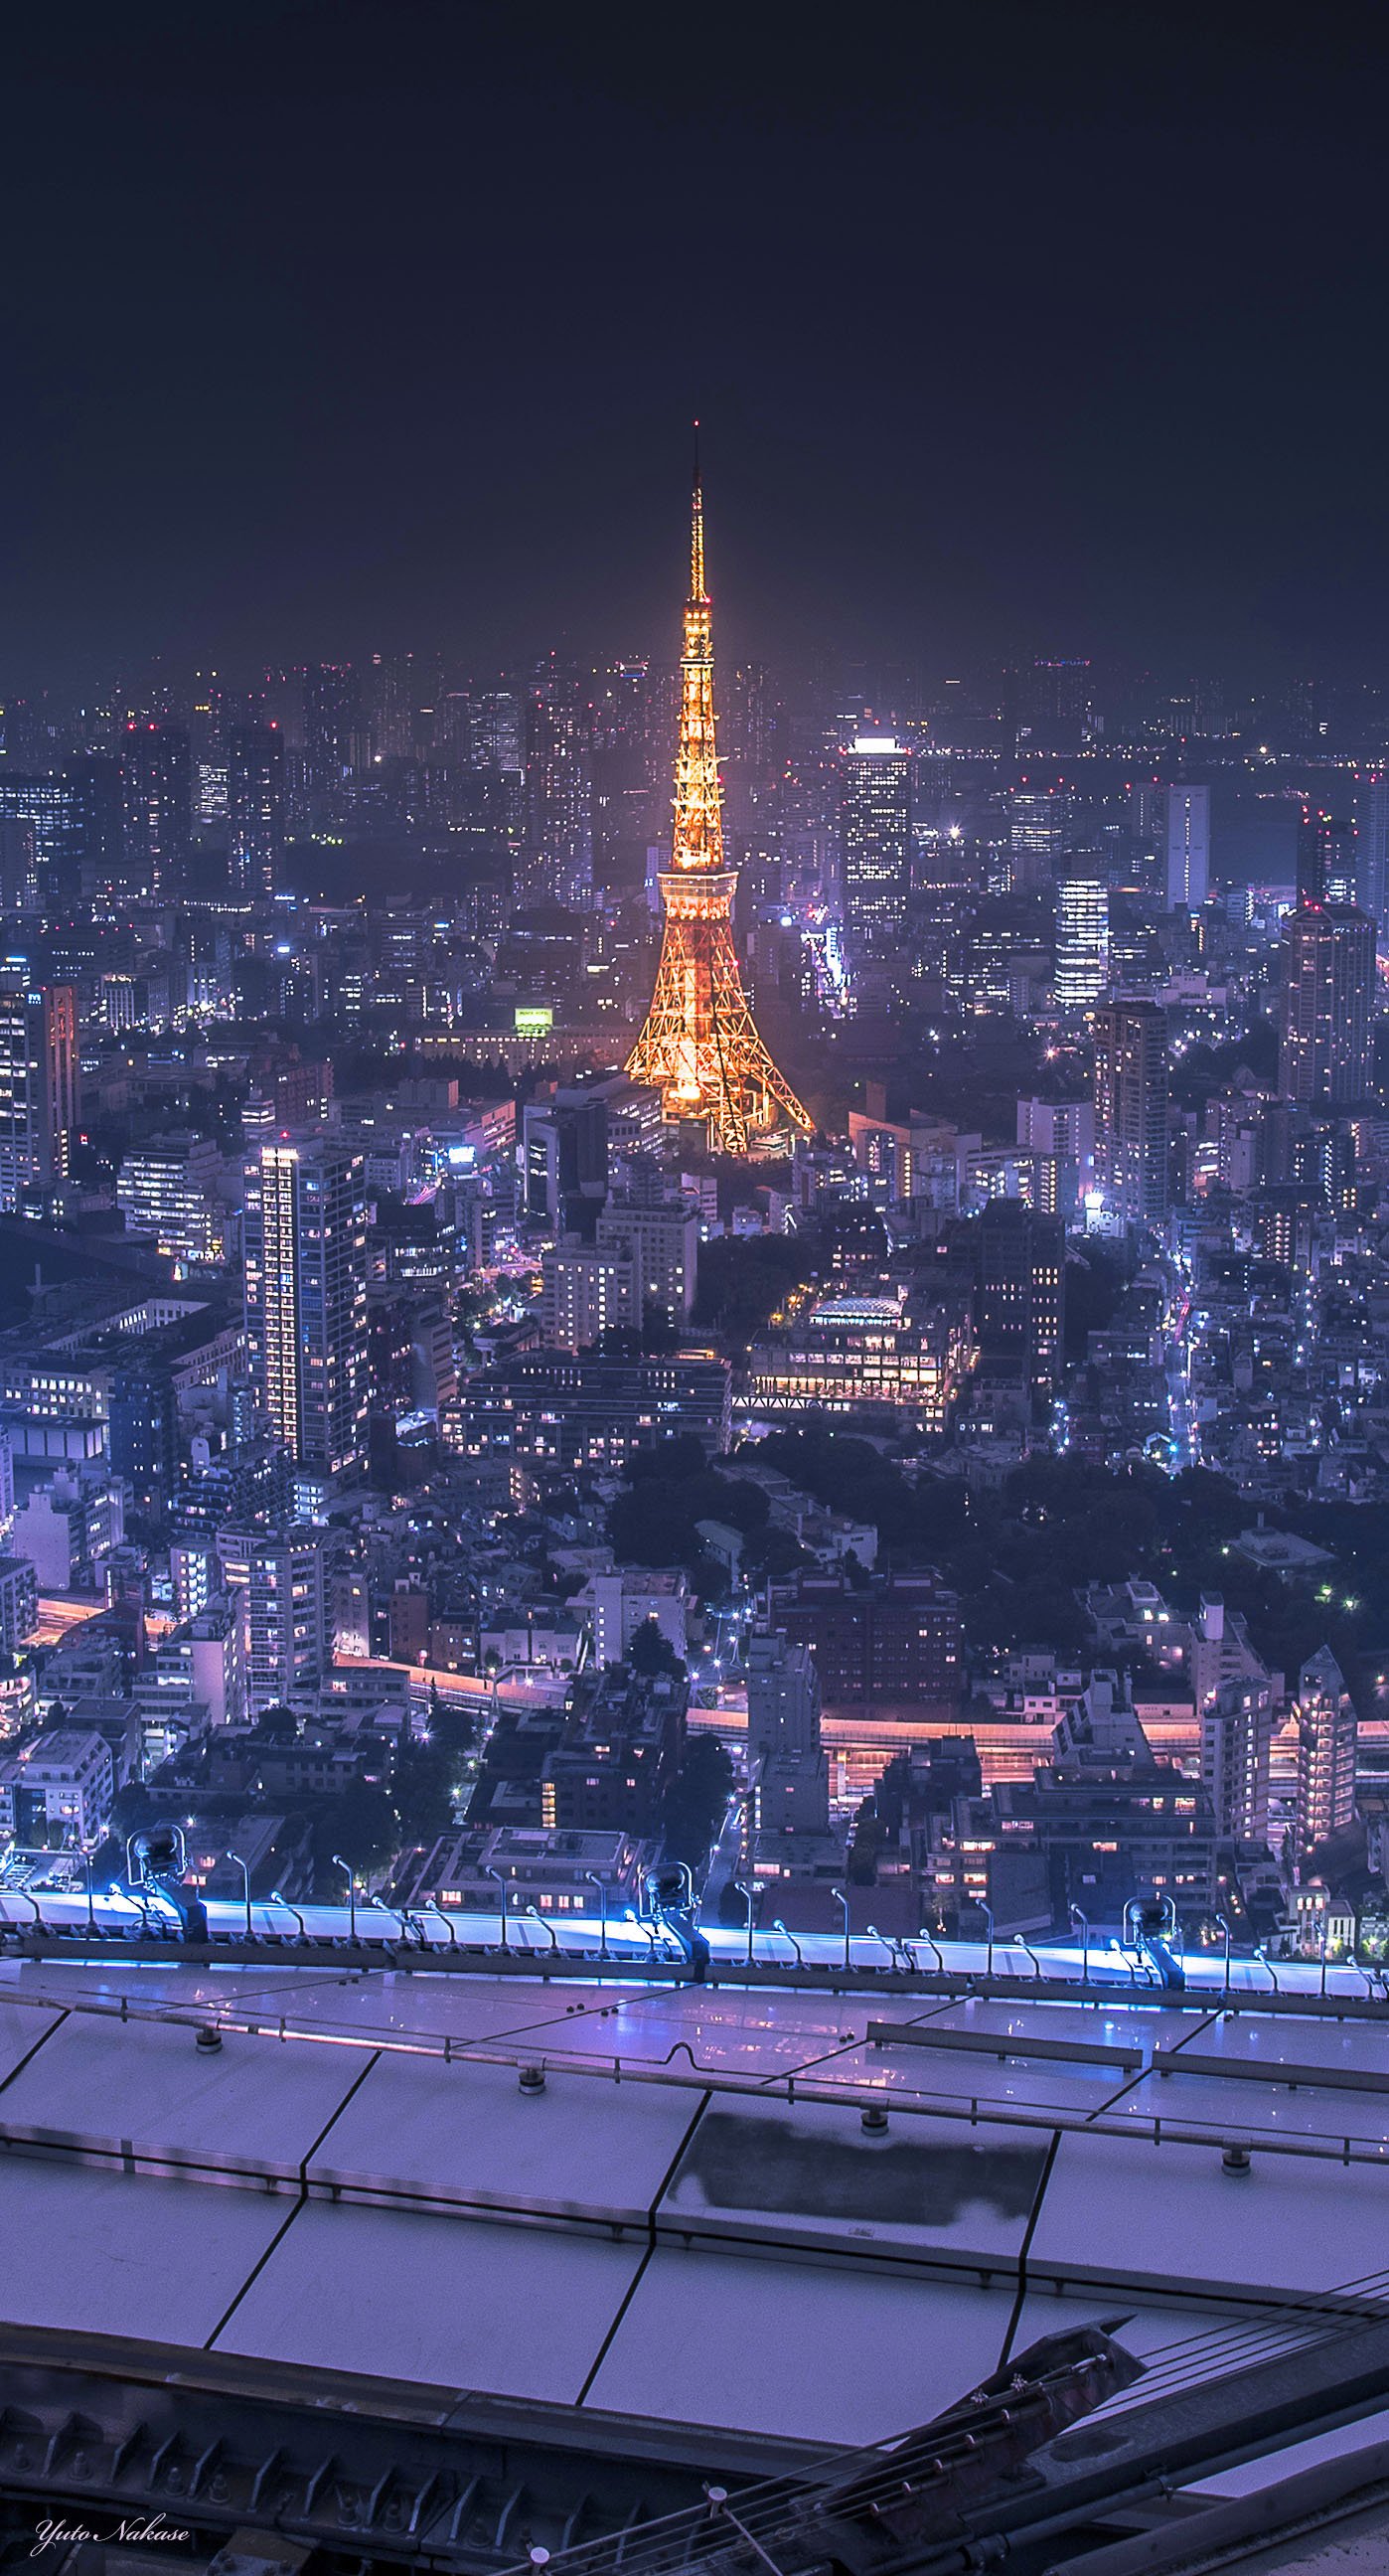 中瀬雄登 初出版 バズる 写真編集術 東京タワー大好きです 六本木ヒルズからと晴海ふ頭からの夜景です スマホの壁紙として使用できるサイズです Iphone壁紙 ニッポンを撮る 東京タワー 六本木ヒルズ 晴海ふ頭 夜景 T Co Mb7eopip